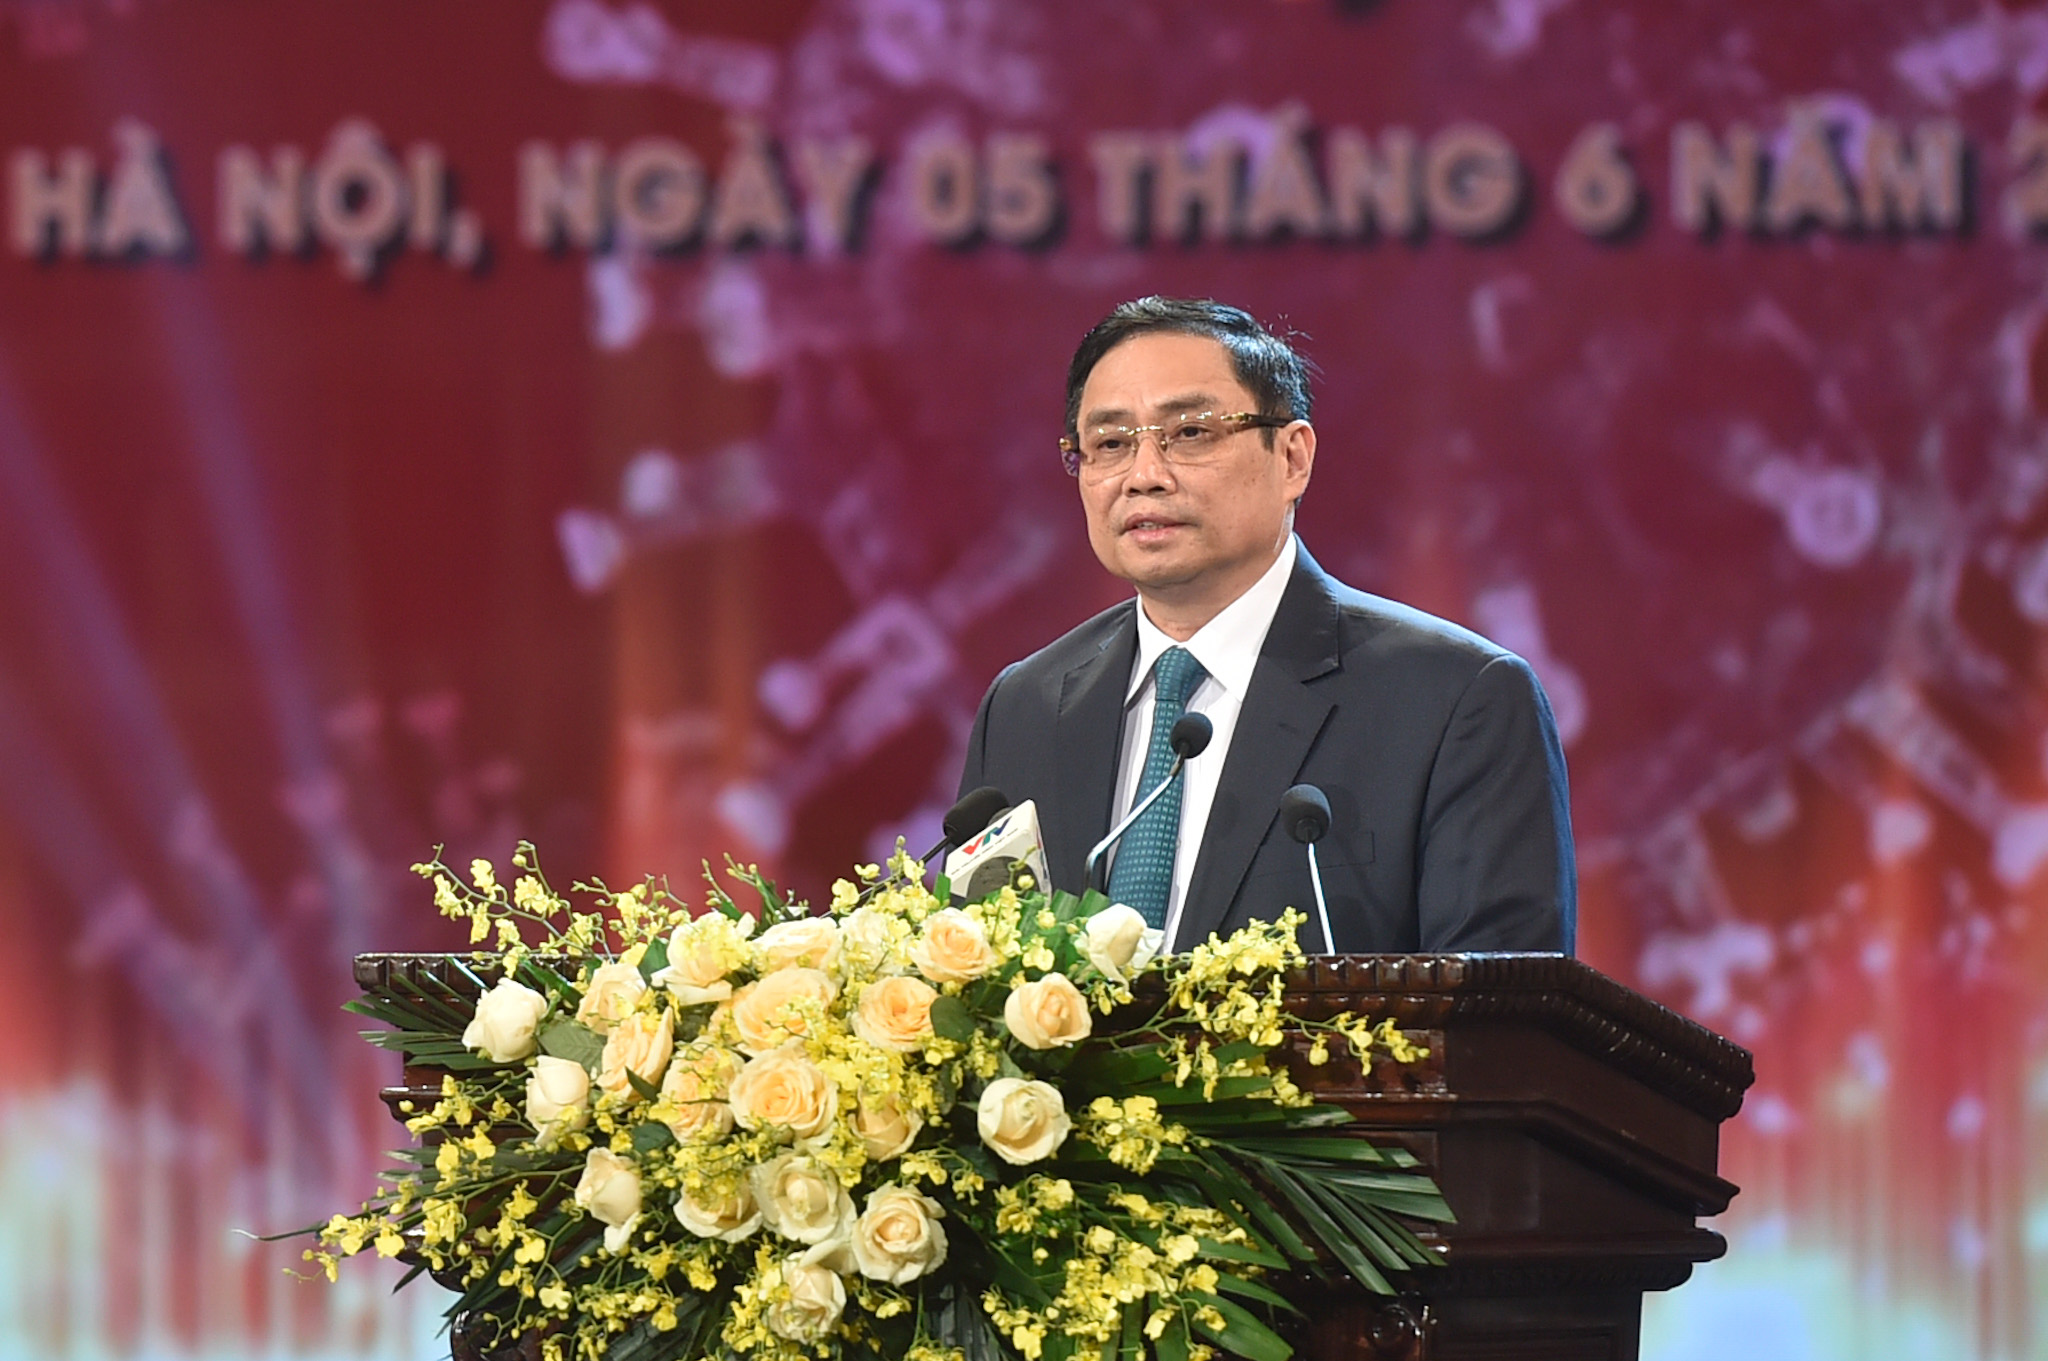 Thủ tướng Phạm Minh Chính: Sự đồng lòng của nhân dân là chìa khóa mở cánh cửa lớn để chúng ta thoát ra khỏi đại dịch và trở về cuộc sống bình thường, bình yên, an dân, an toàn.